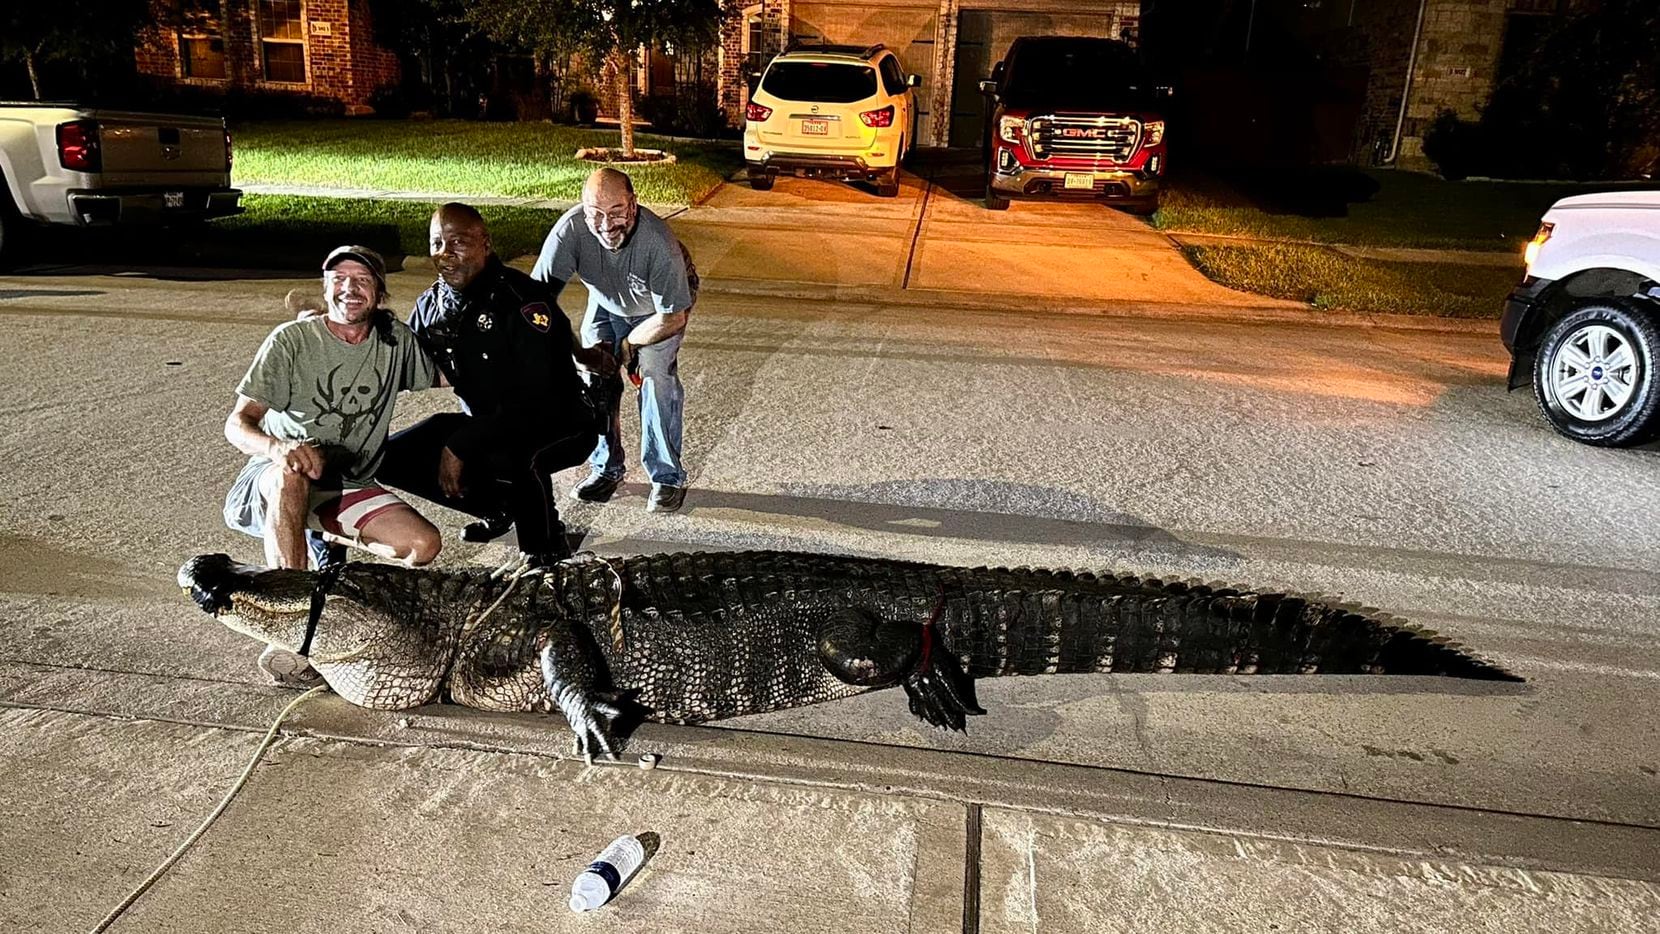 Autoridades capturaron a un cocodrilo de 12 pies de largo en un vecindario de Houston.